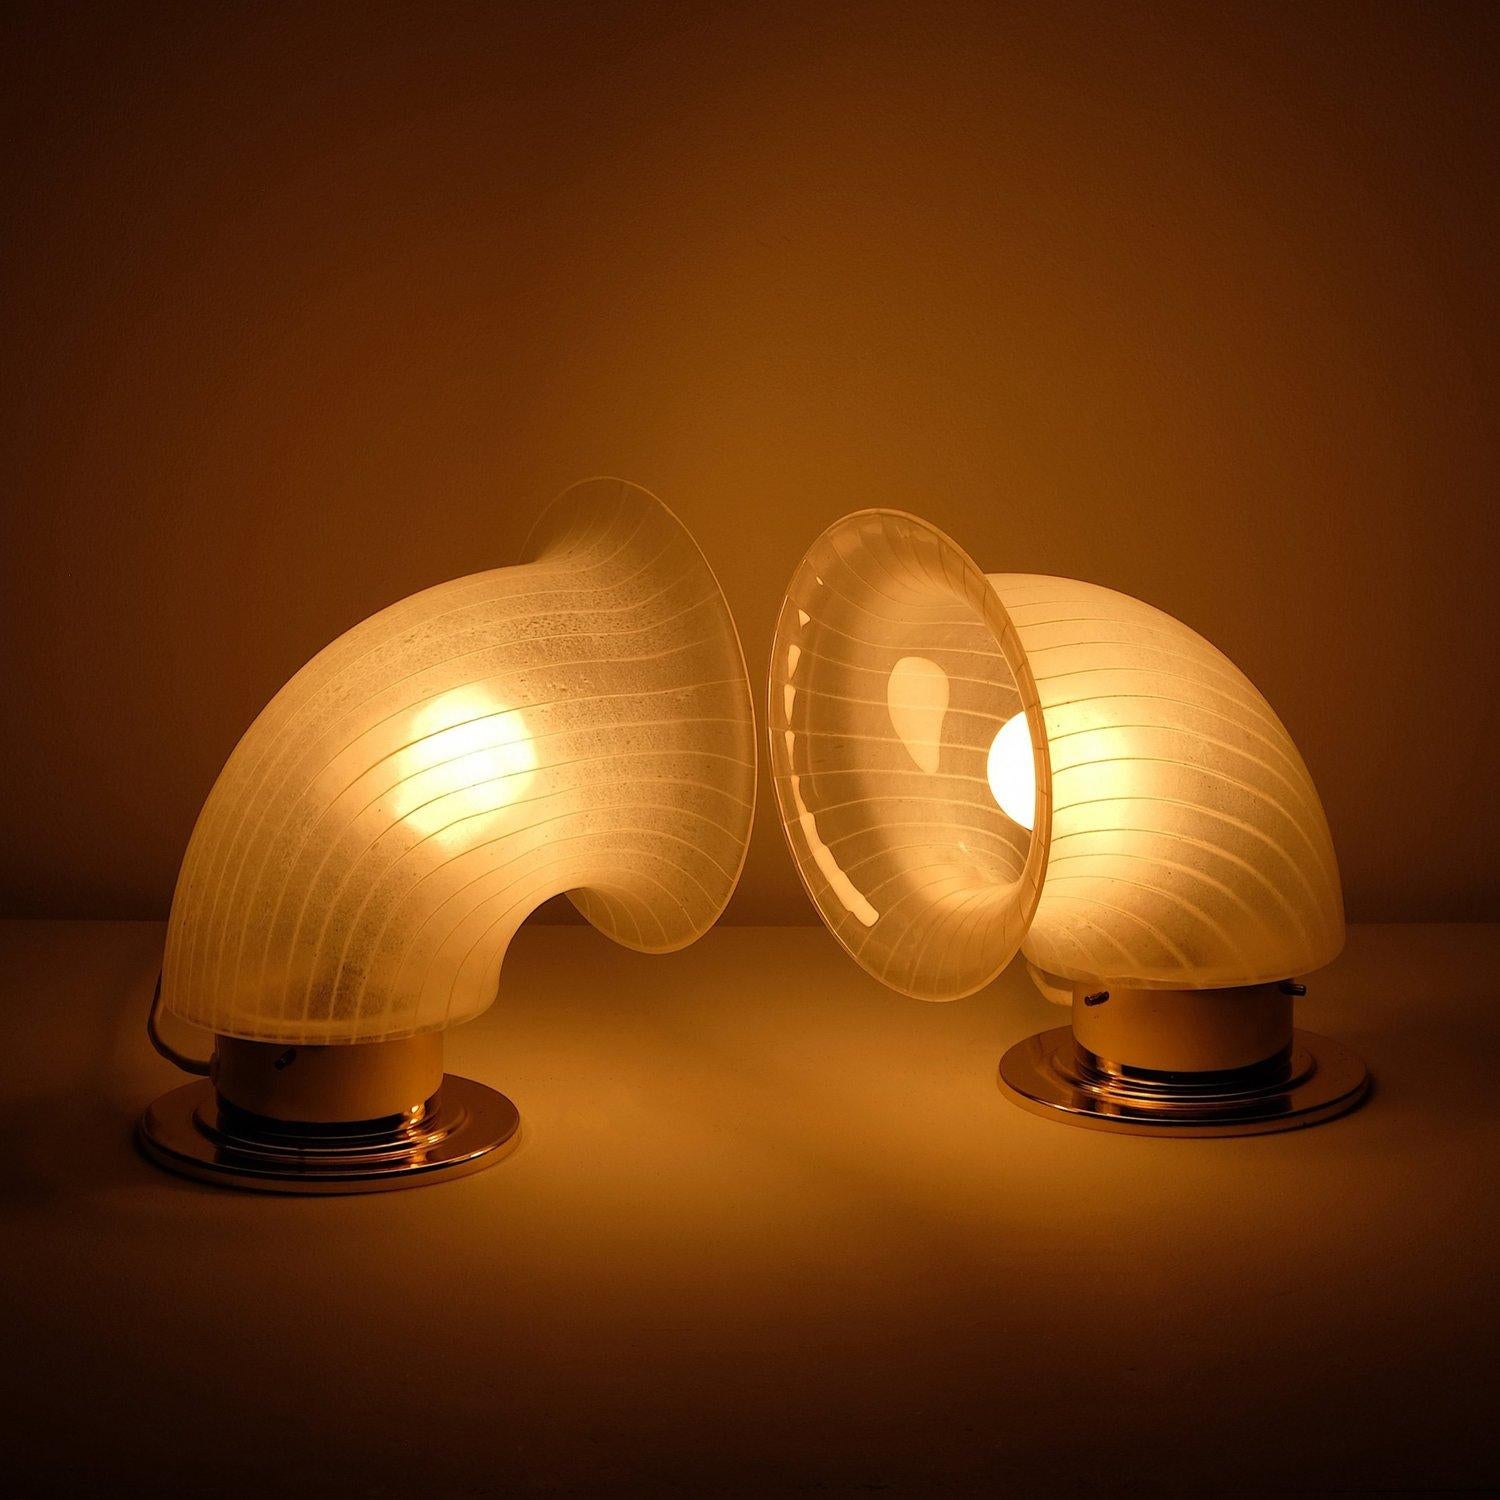 Seltene Carlo-Nason-Nebelhorn-Tischlampen für Mazegga. Schöne Murano-Glasschirme auf vermessingten Ständern. Kann als festverdrahteter Wandleuchter modifiziert werden. 40-60 Watt E-14 (europäische Glühbirne) oder höher, wenn LED/CFL.

Geprüfte